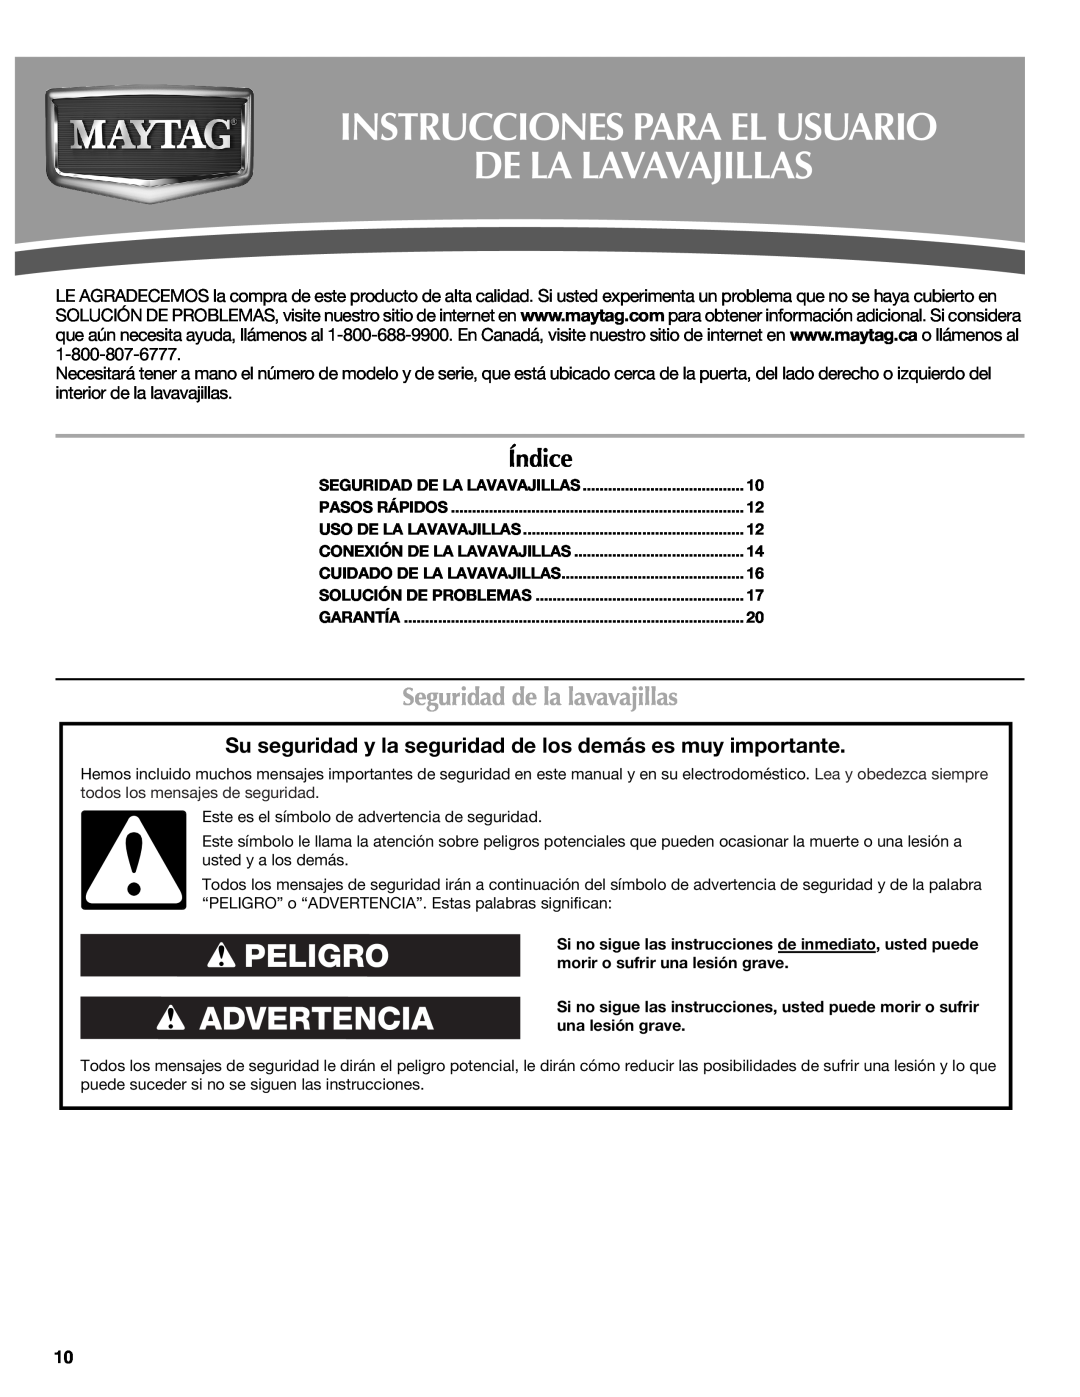 Maytag W10438305A warranty Instrucciones Para El Usuario De La Lavavajillas, Índice, Seguridad de la lavavajillas 